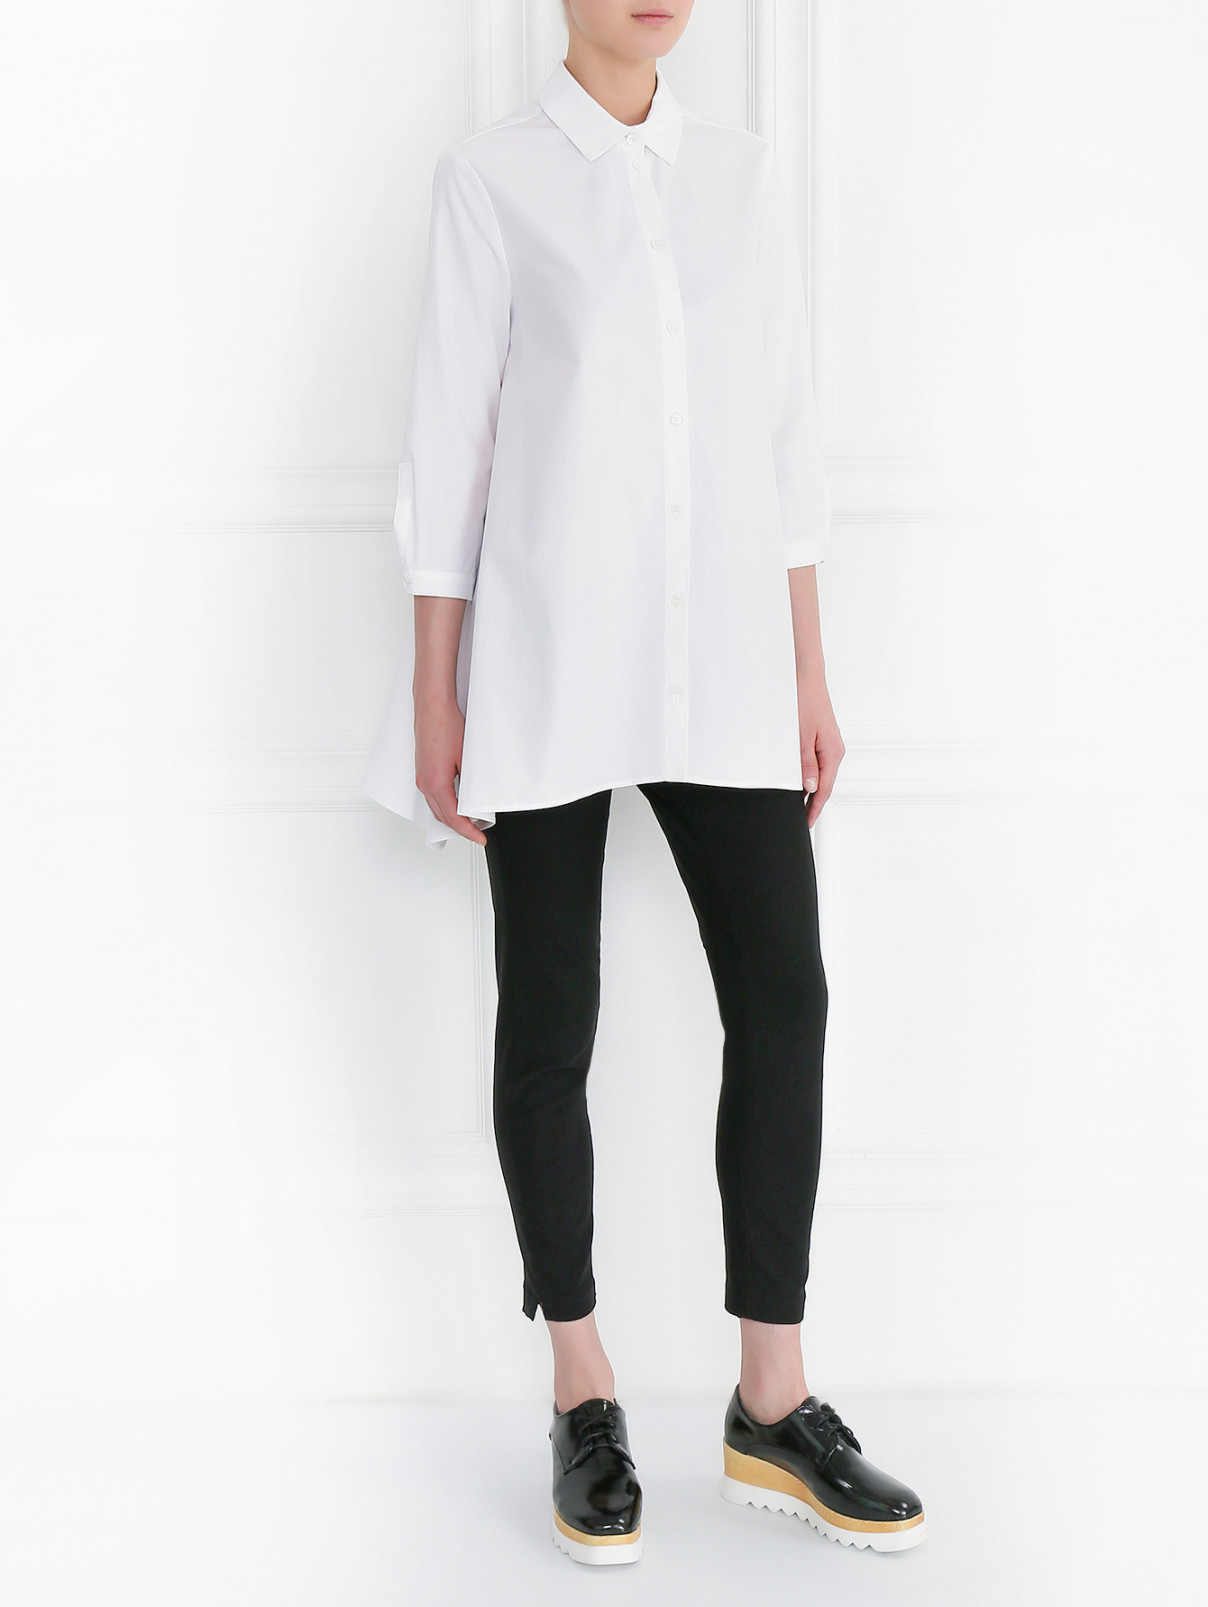 Рубашка из хлопка свободного кроя Isola Marras  –  Модель Общий вид  – Цвет:  Белый